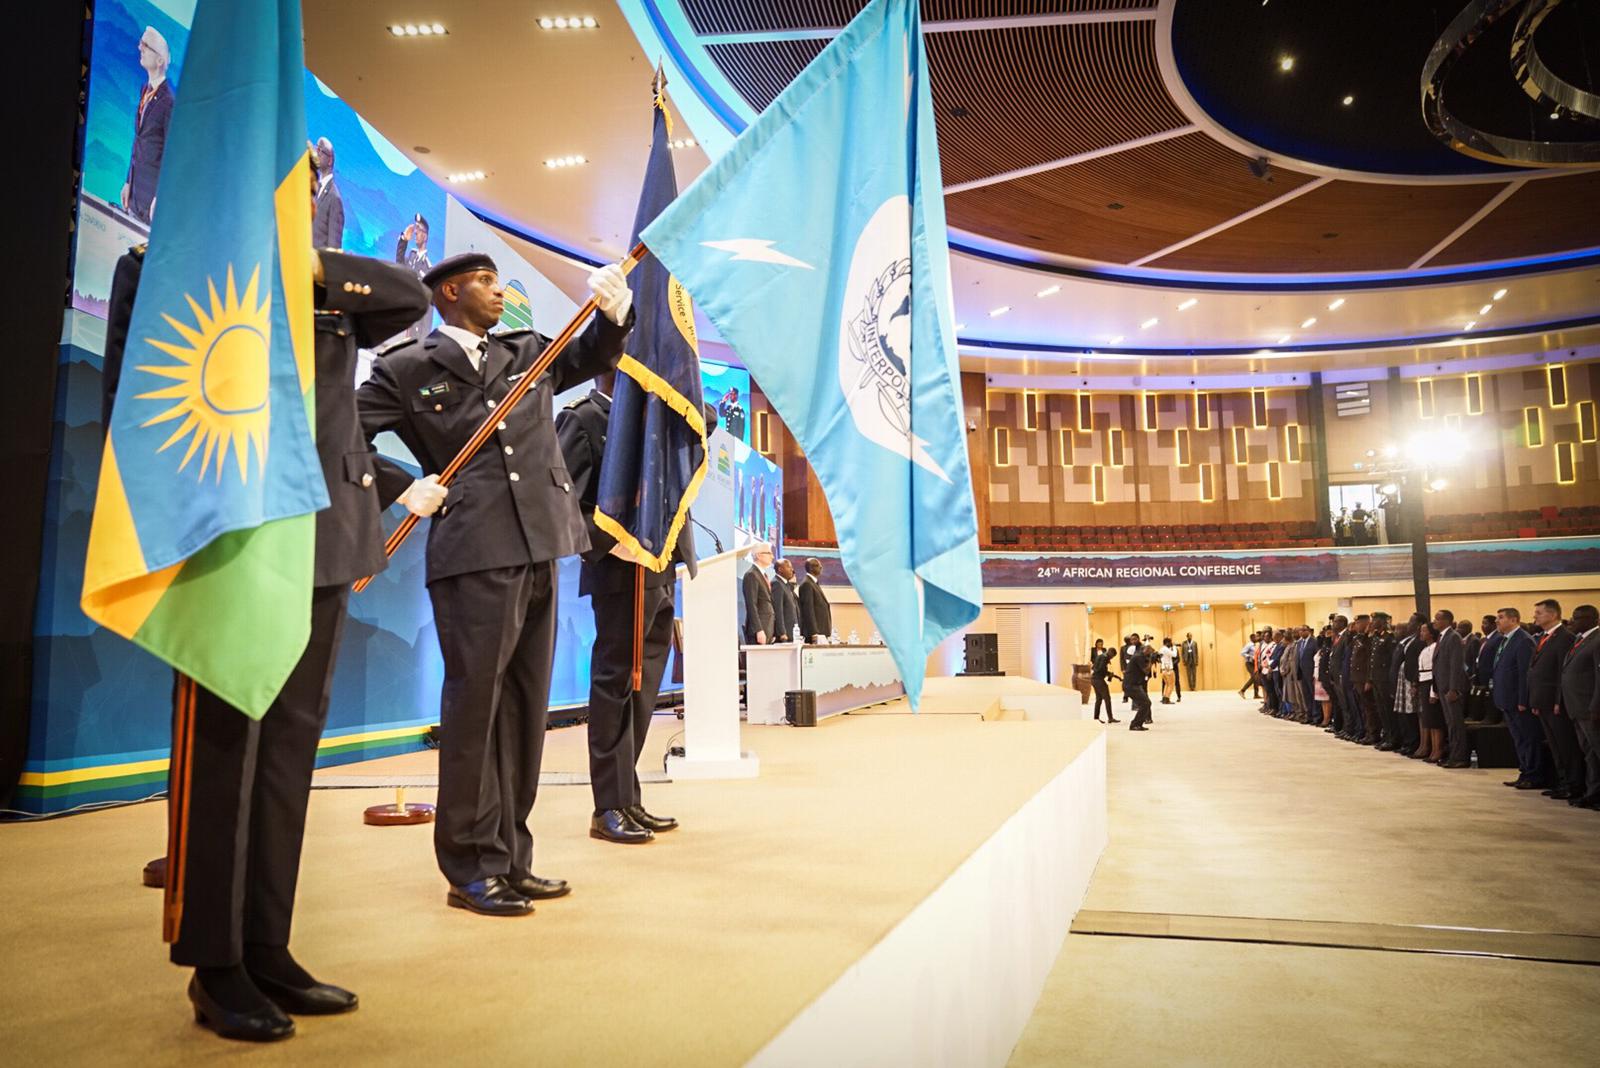 La 24ème Conférence régionale africaine d’INTERPOL a lieu à Kigali (Rwanda) du 5 au 7 février.